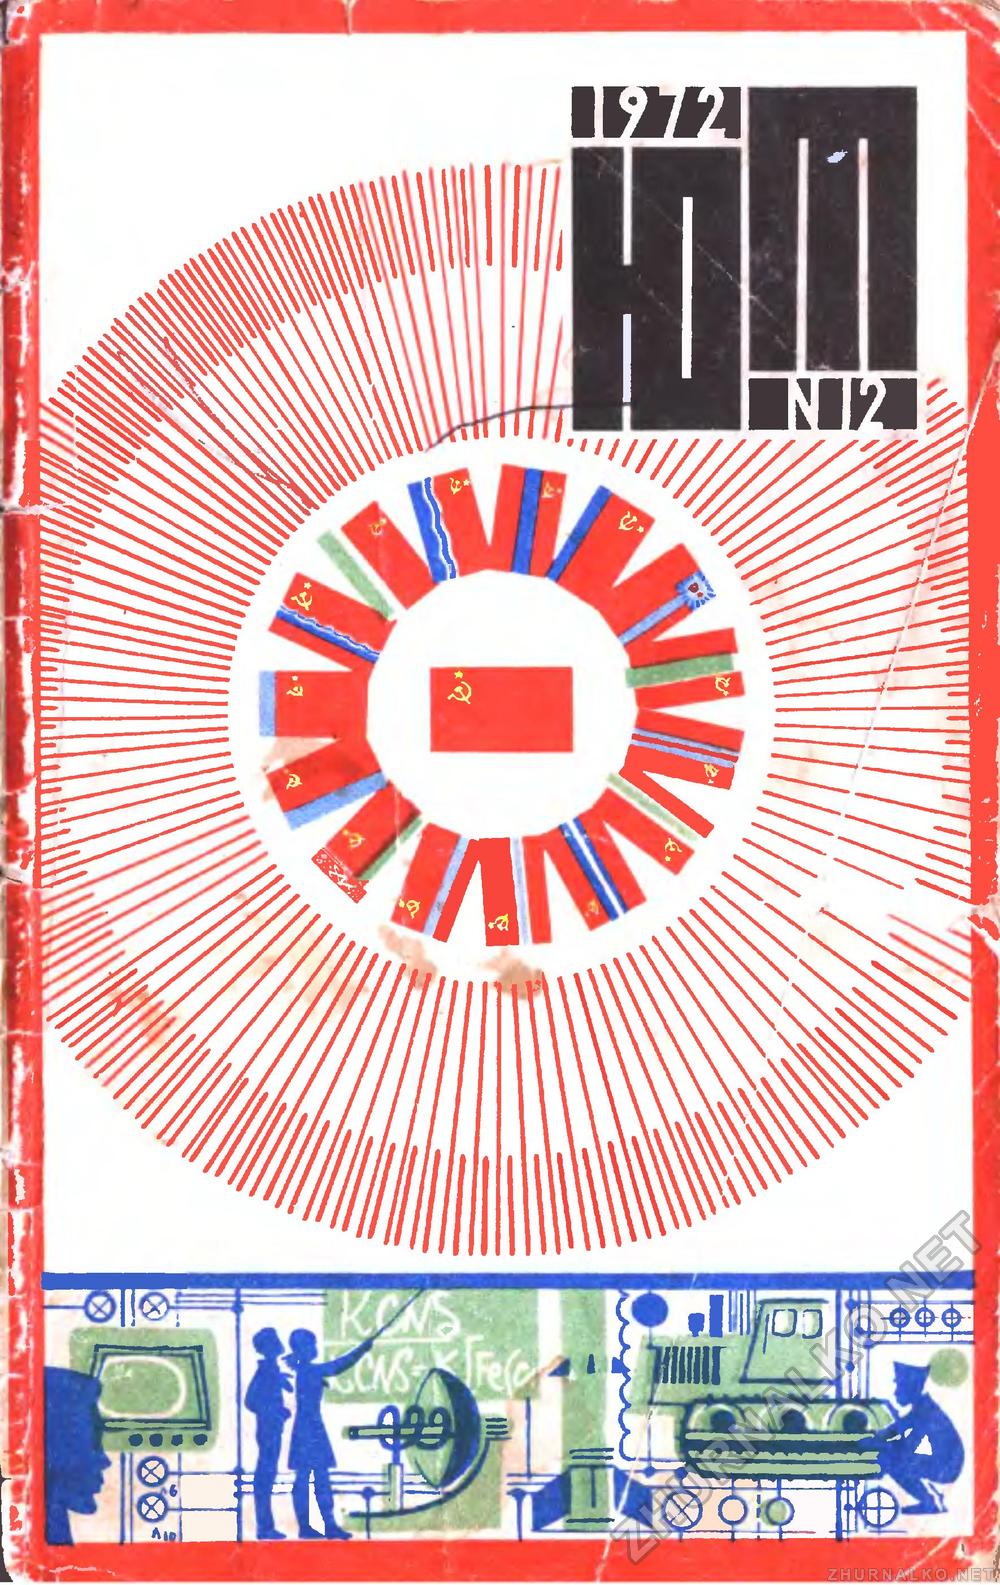   1972-12,  1